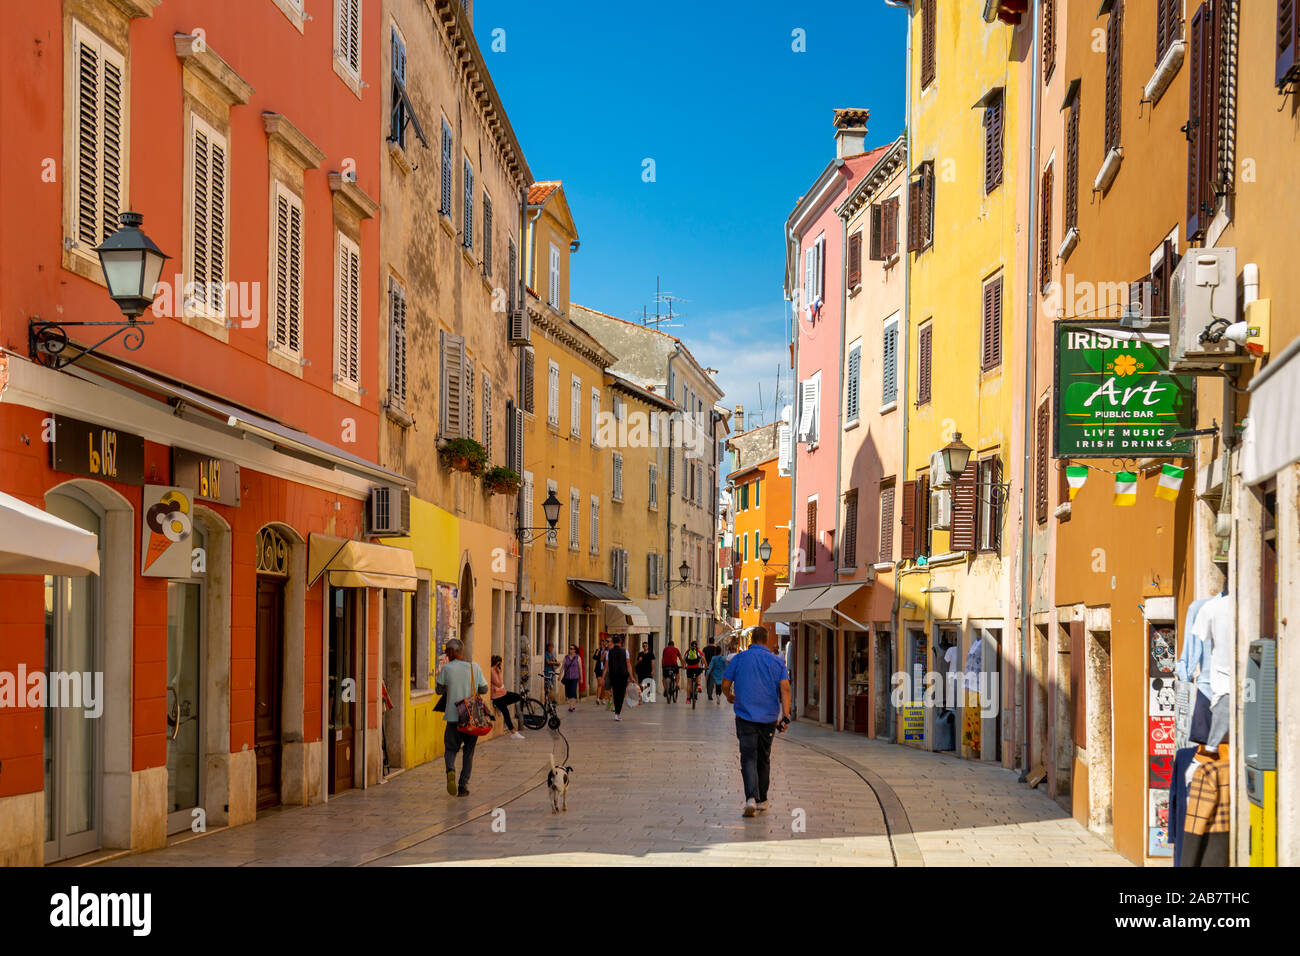 Vista di negozi e persone in una colorata città vecchia, Rovigno, Istria, Croazia, Adriatico, Europa Foto Stock